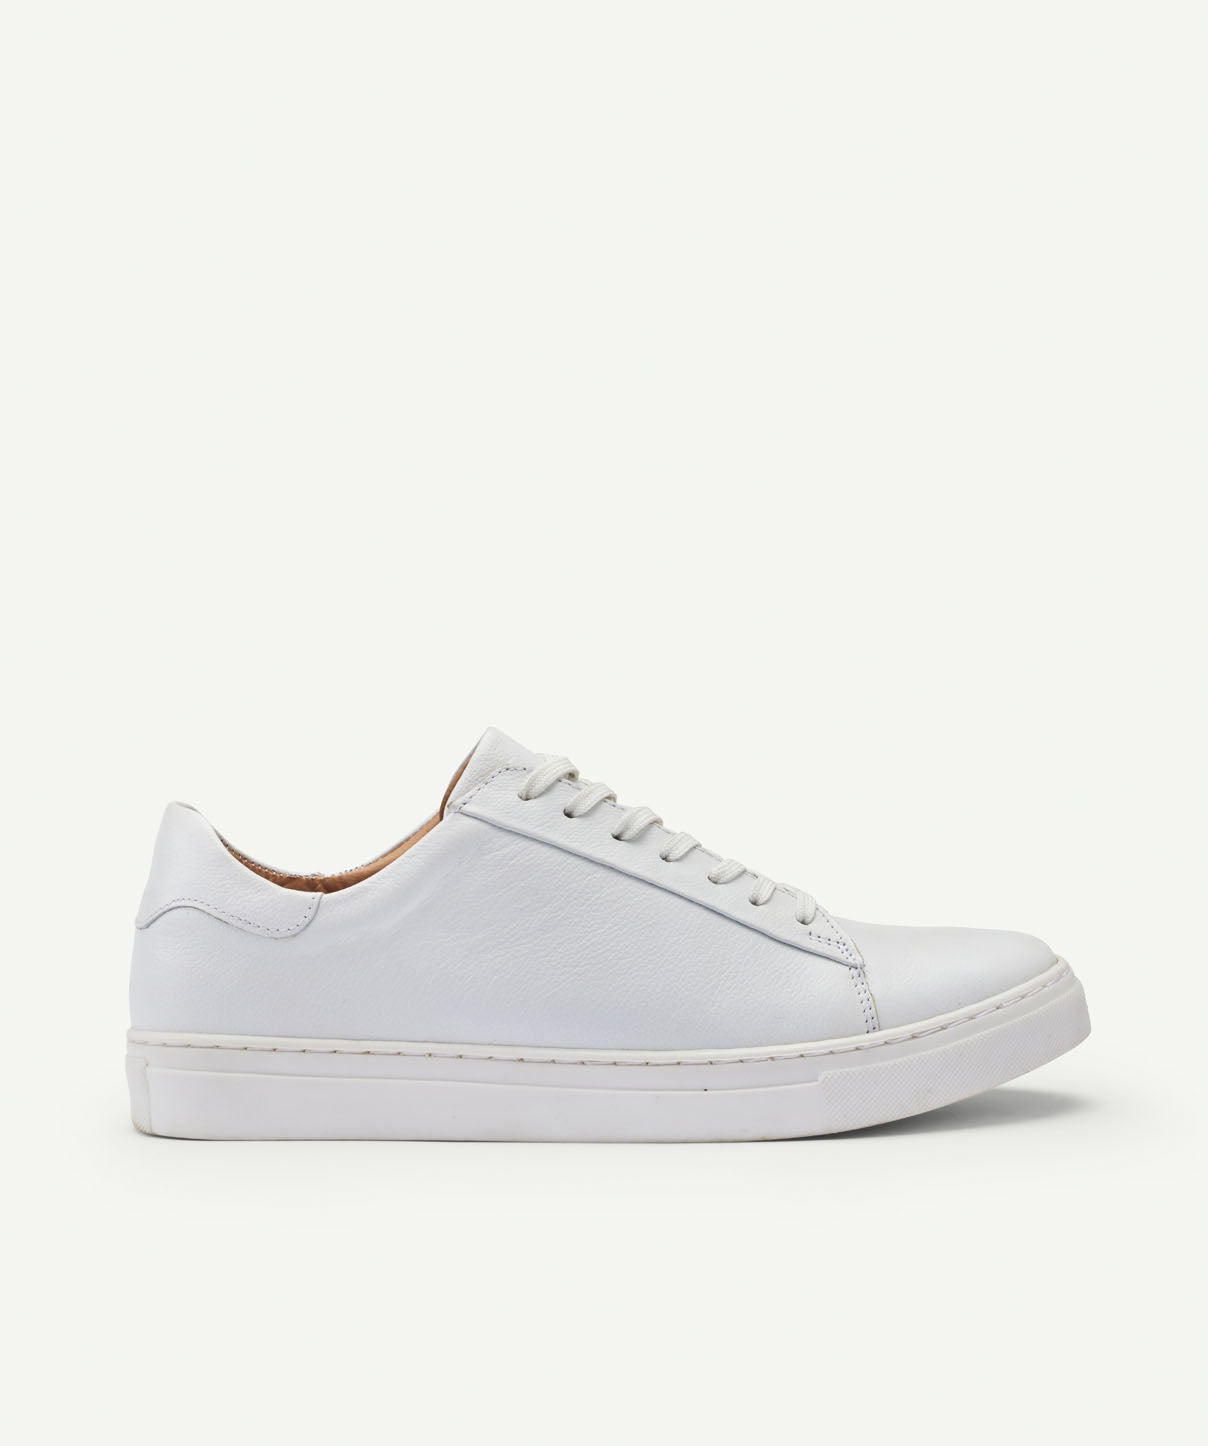 GAZMAN Leather Sneaker - White - Shoes - GAZMAN